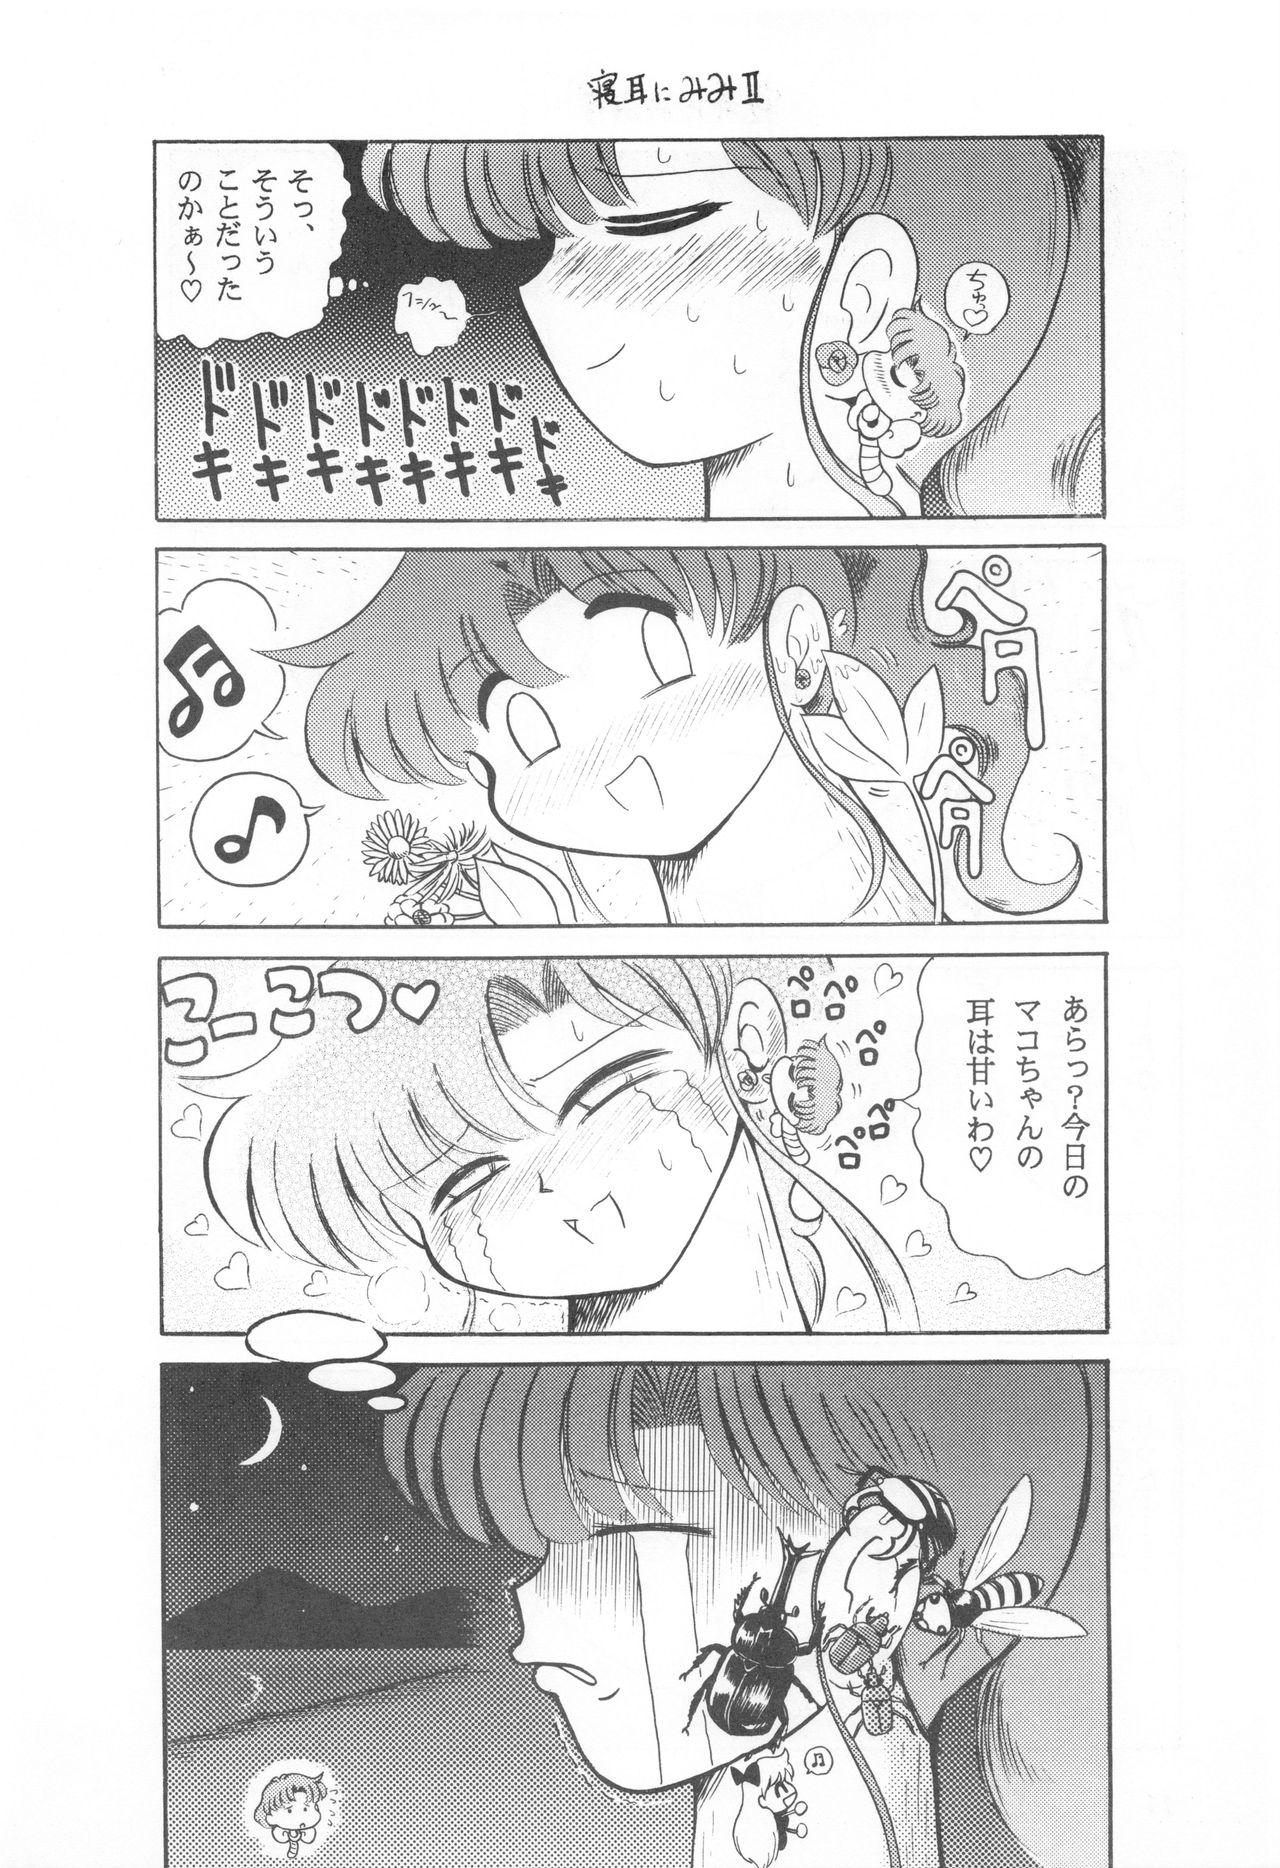 Playing Mimizu no Ami-chan Vol. 2 - Sailor moon Str8 - Page 11